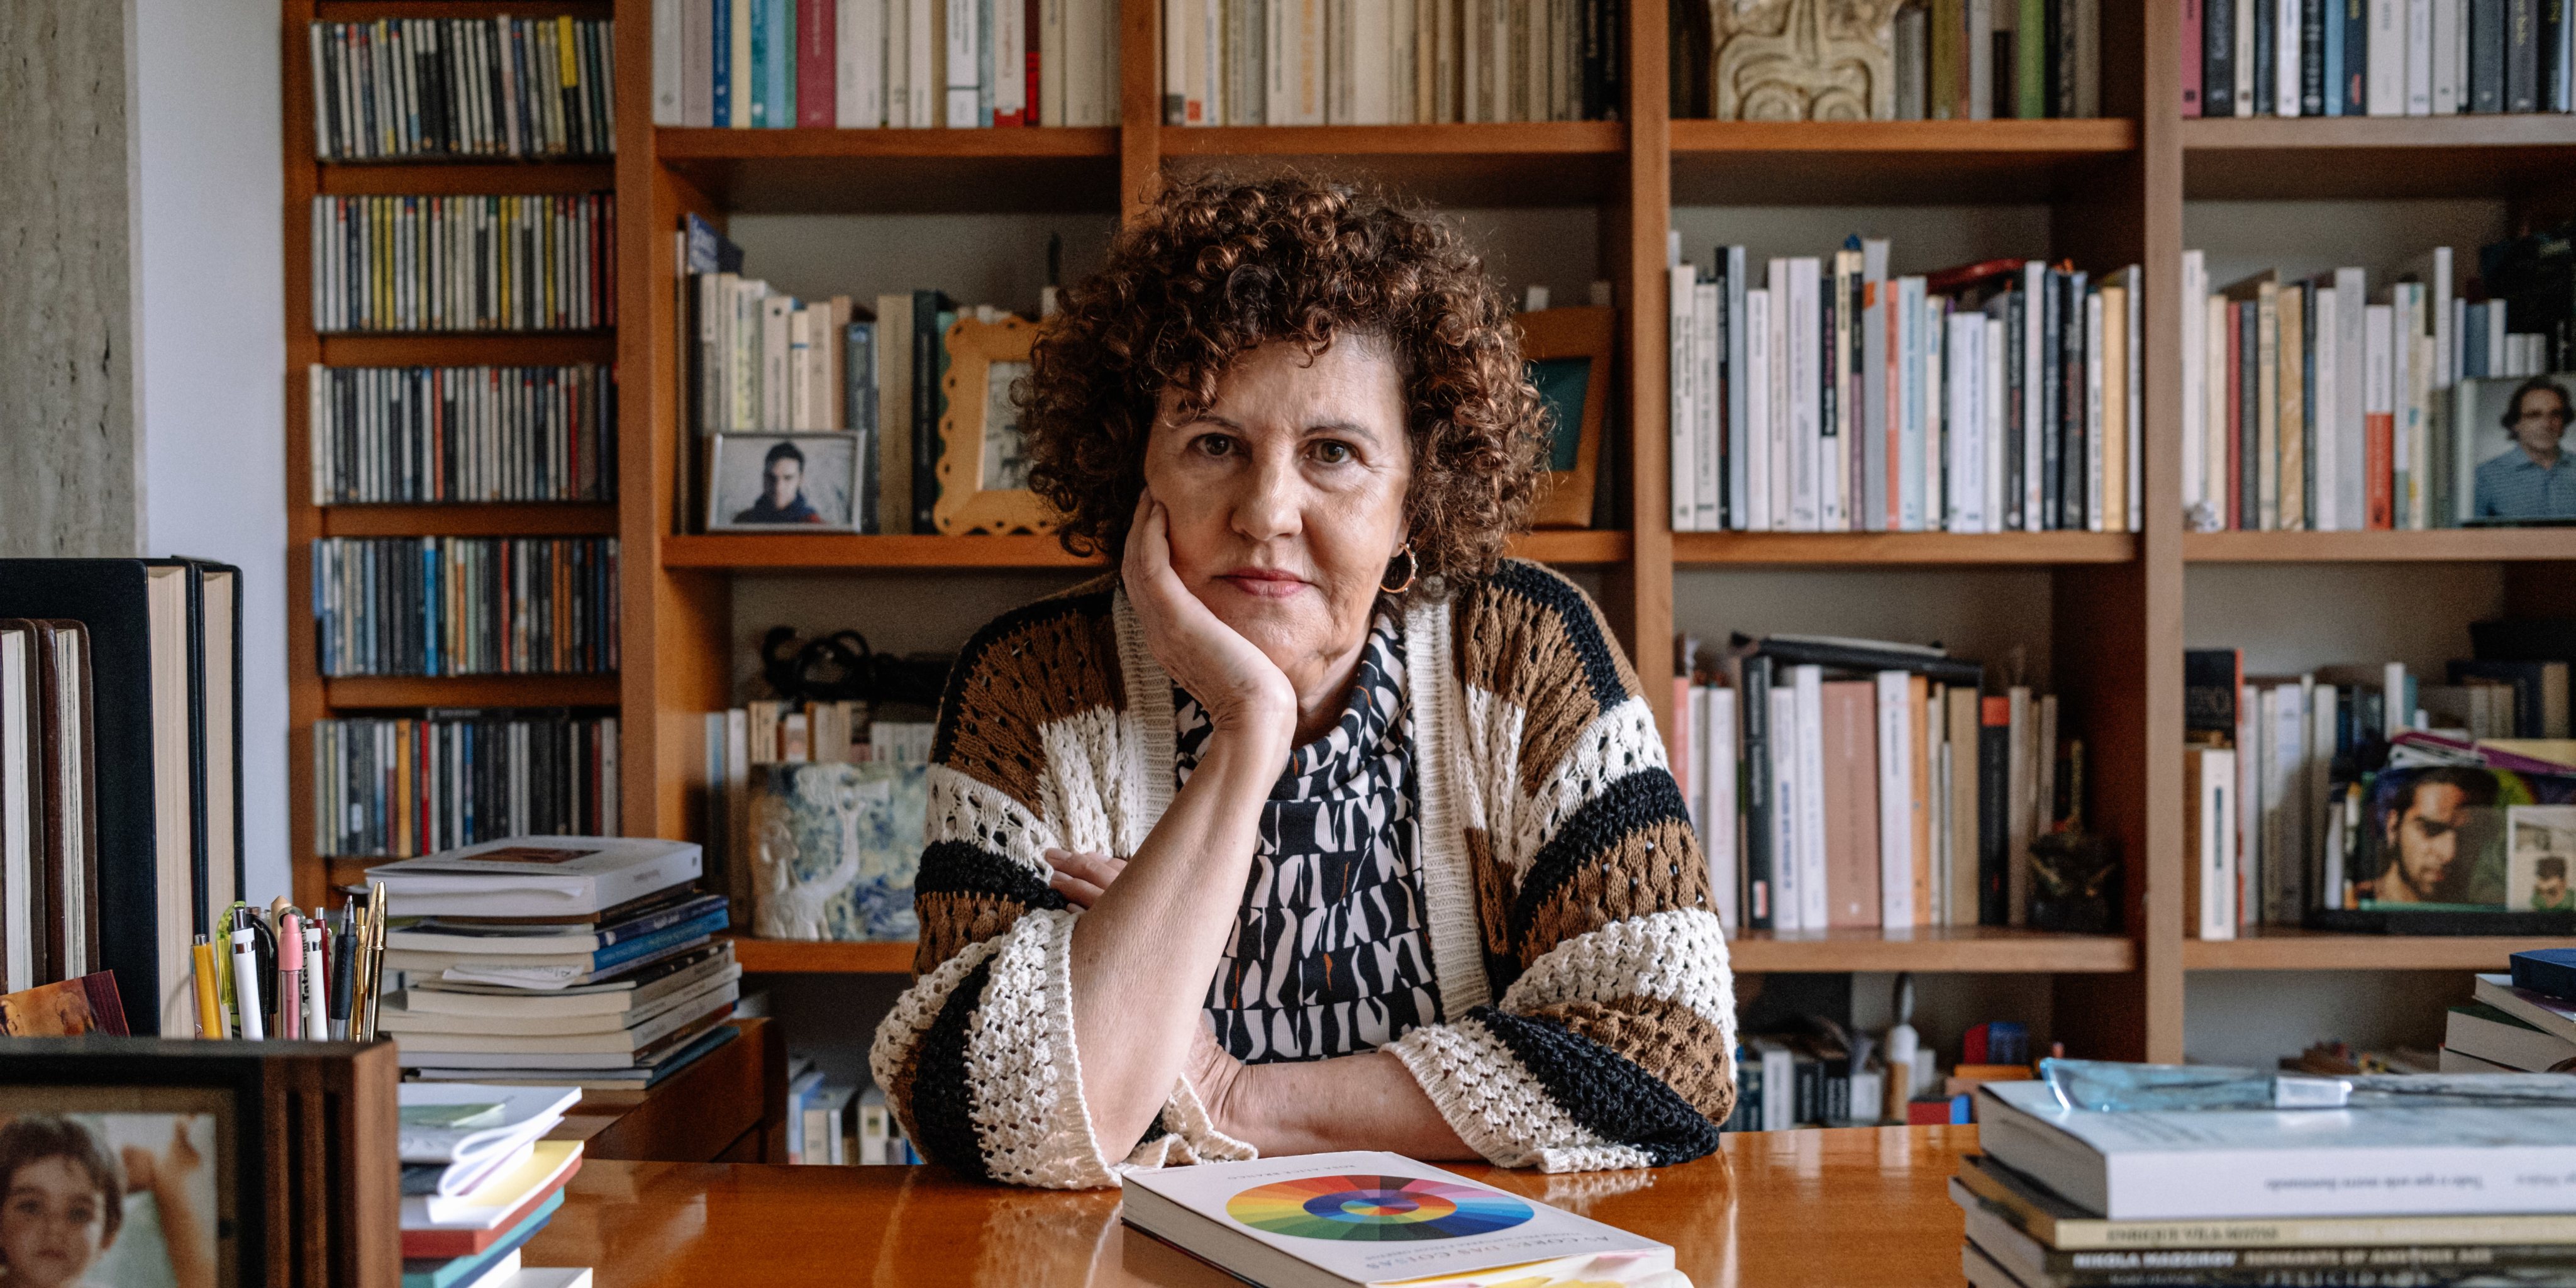 Aos 72 anos, Rosa Alice Branco acumula vários papeis na vida: escritora, professora, investigadora e curadora (Fotografia: Igor Martins/Observador)